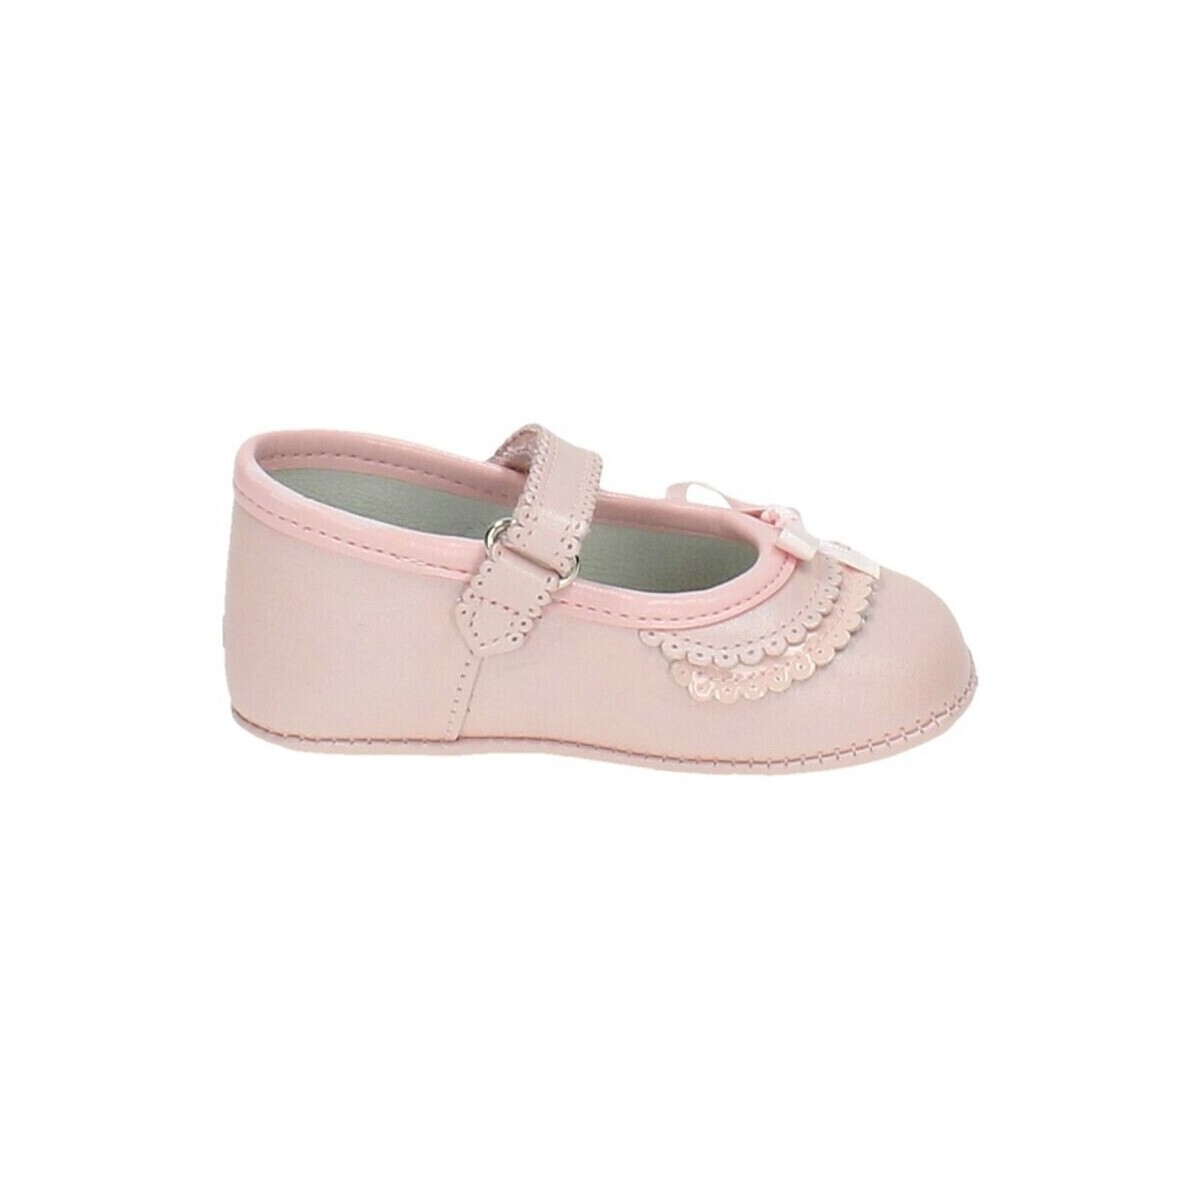 Παπούτσια Αγόρι Σοσονάκια μωρού Citos 22622-15 Ροζ